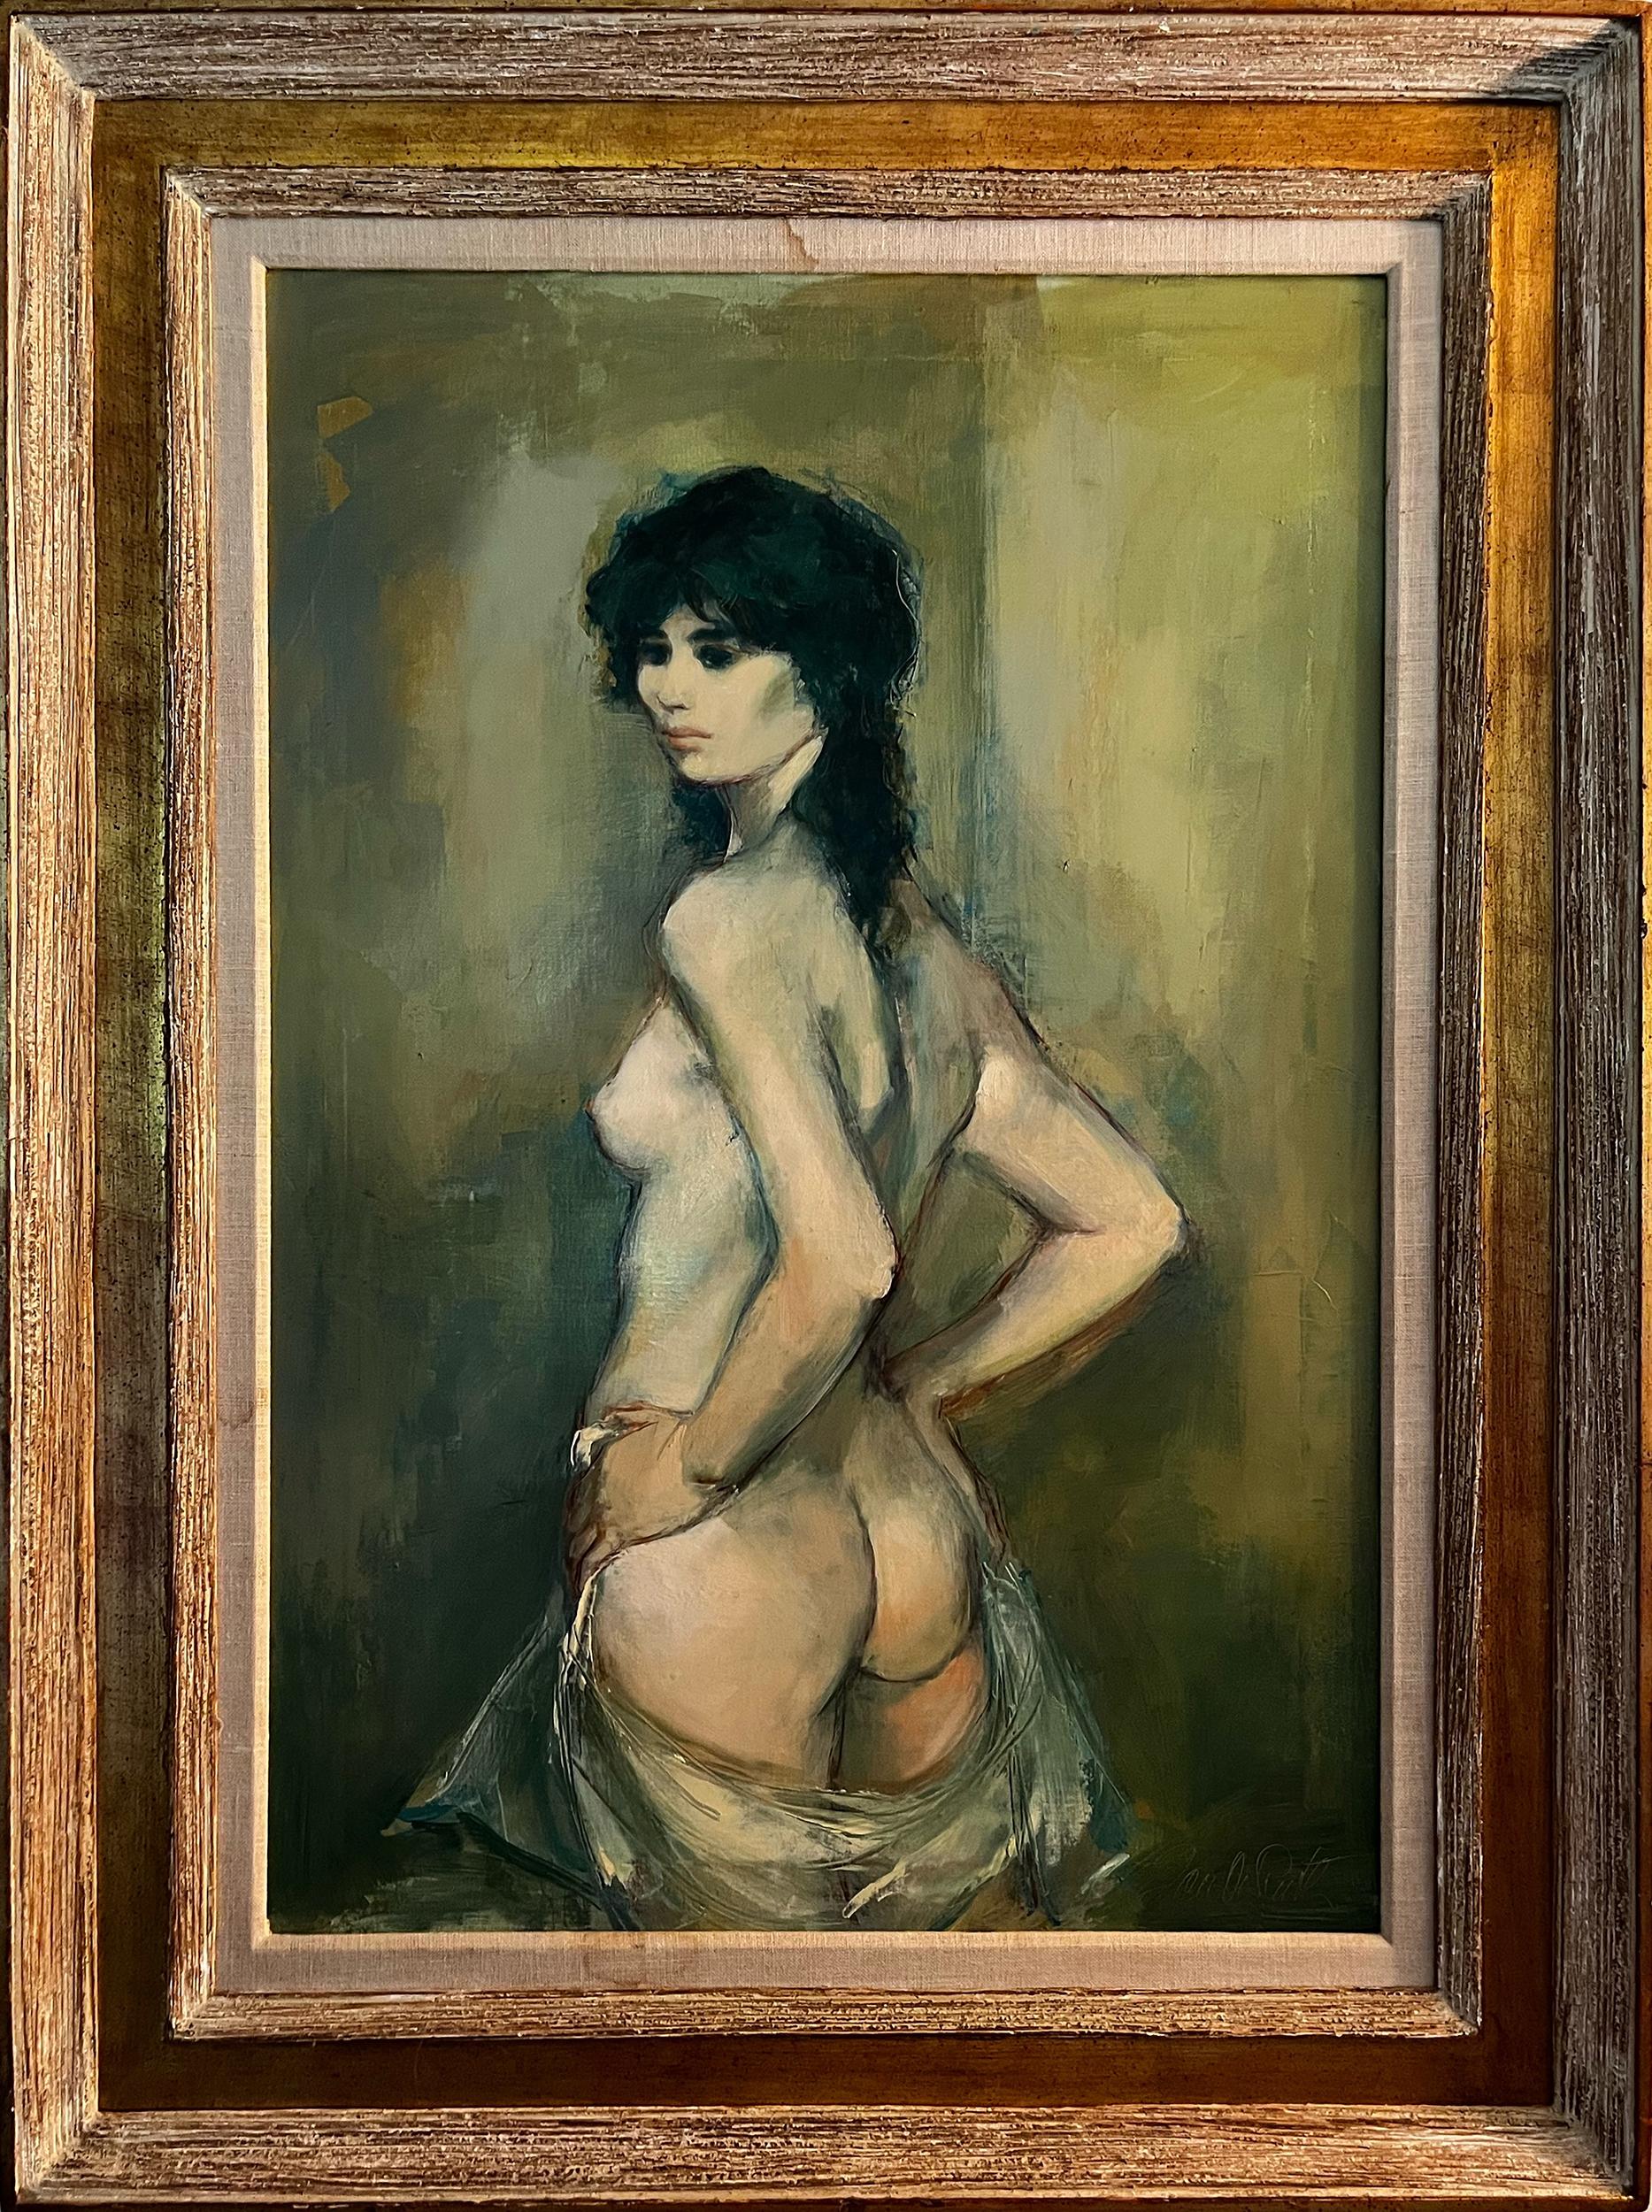 Das impressionistische Gemälde von Jan de Ruth zeigt eine nackte Frau, die dem Betrachter den Rücken zuwendet. Sie dreht sich um und schaut über ihre Schulter, so dass wir ihr Gesicht und ihre Brust sehen können. Das einzige Kleidungsstück, das sie